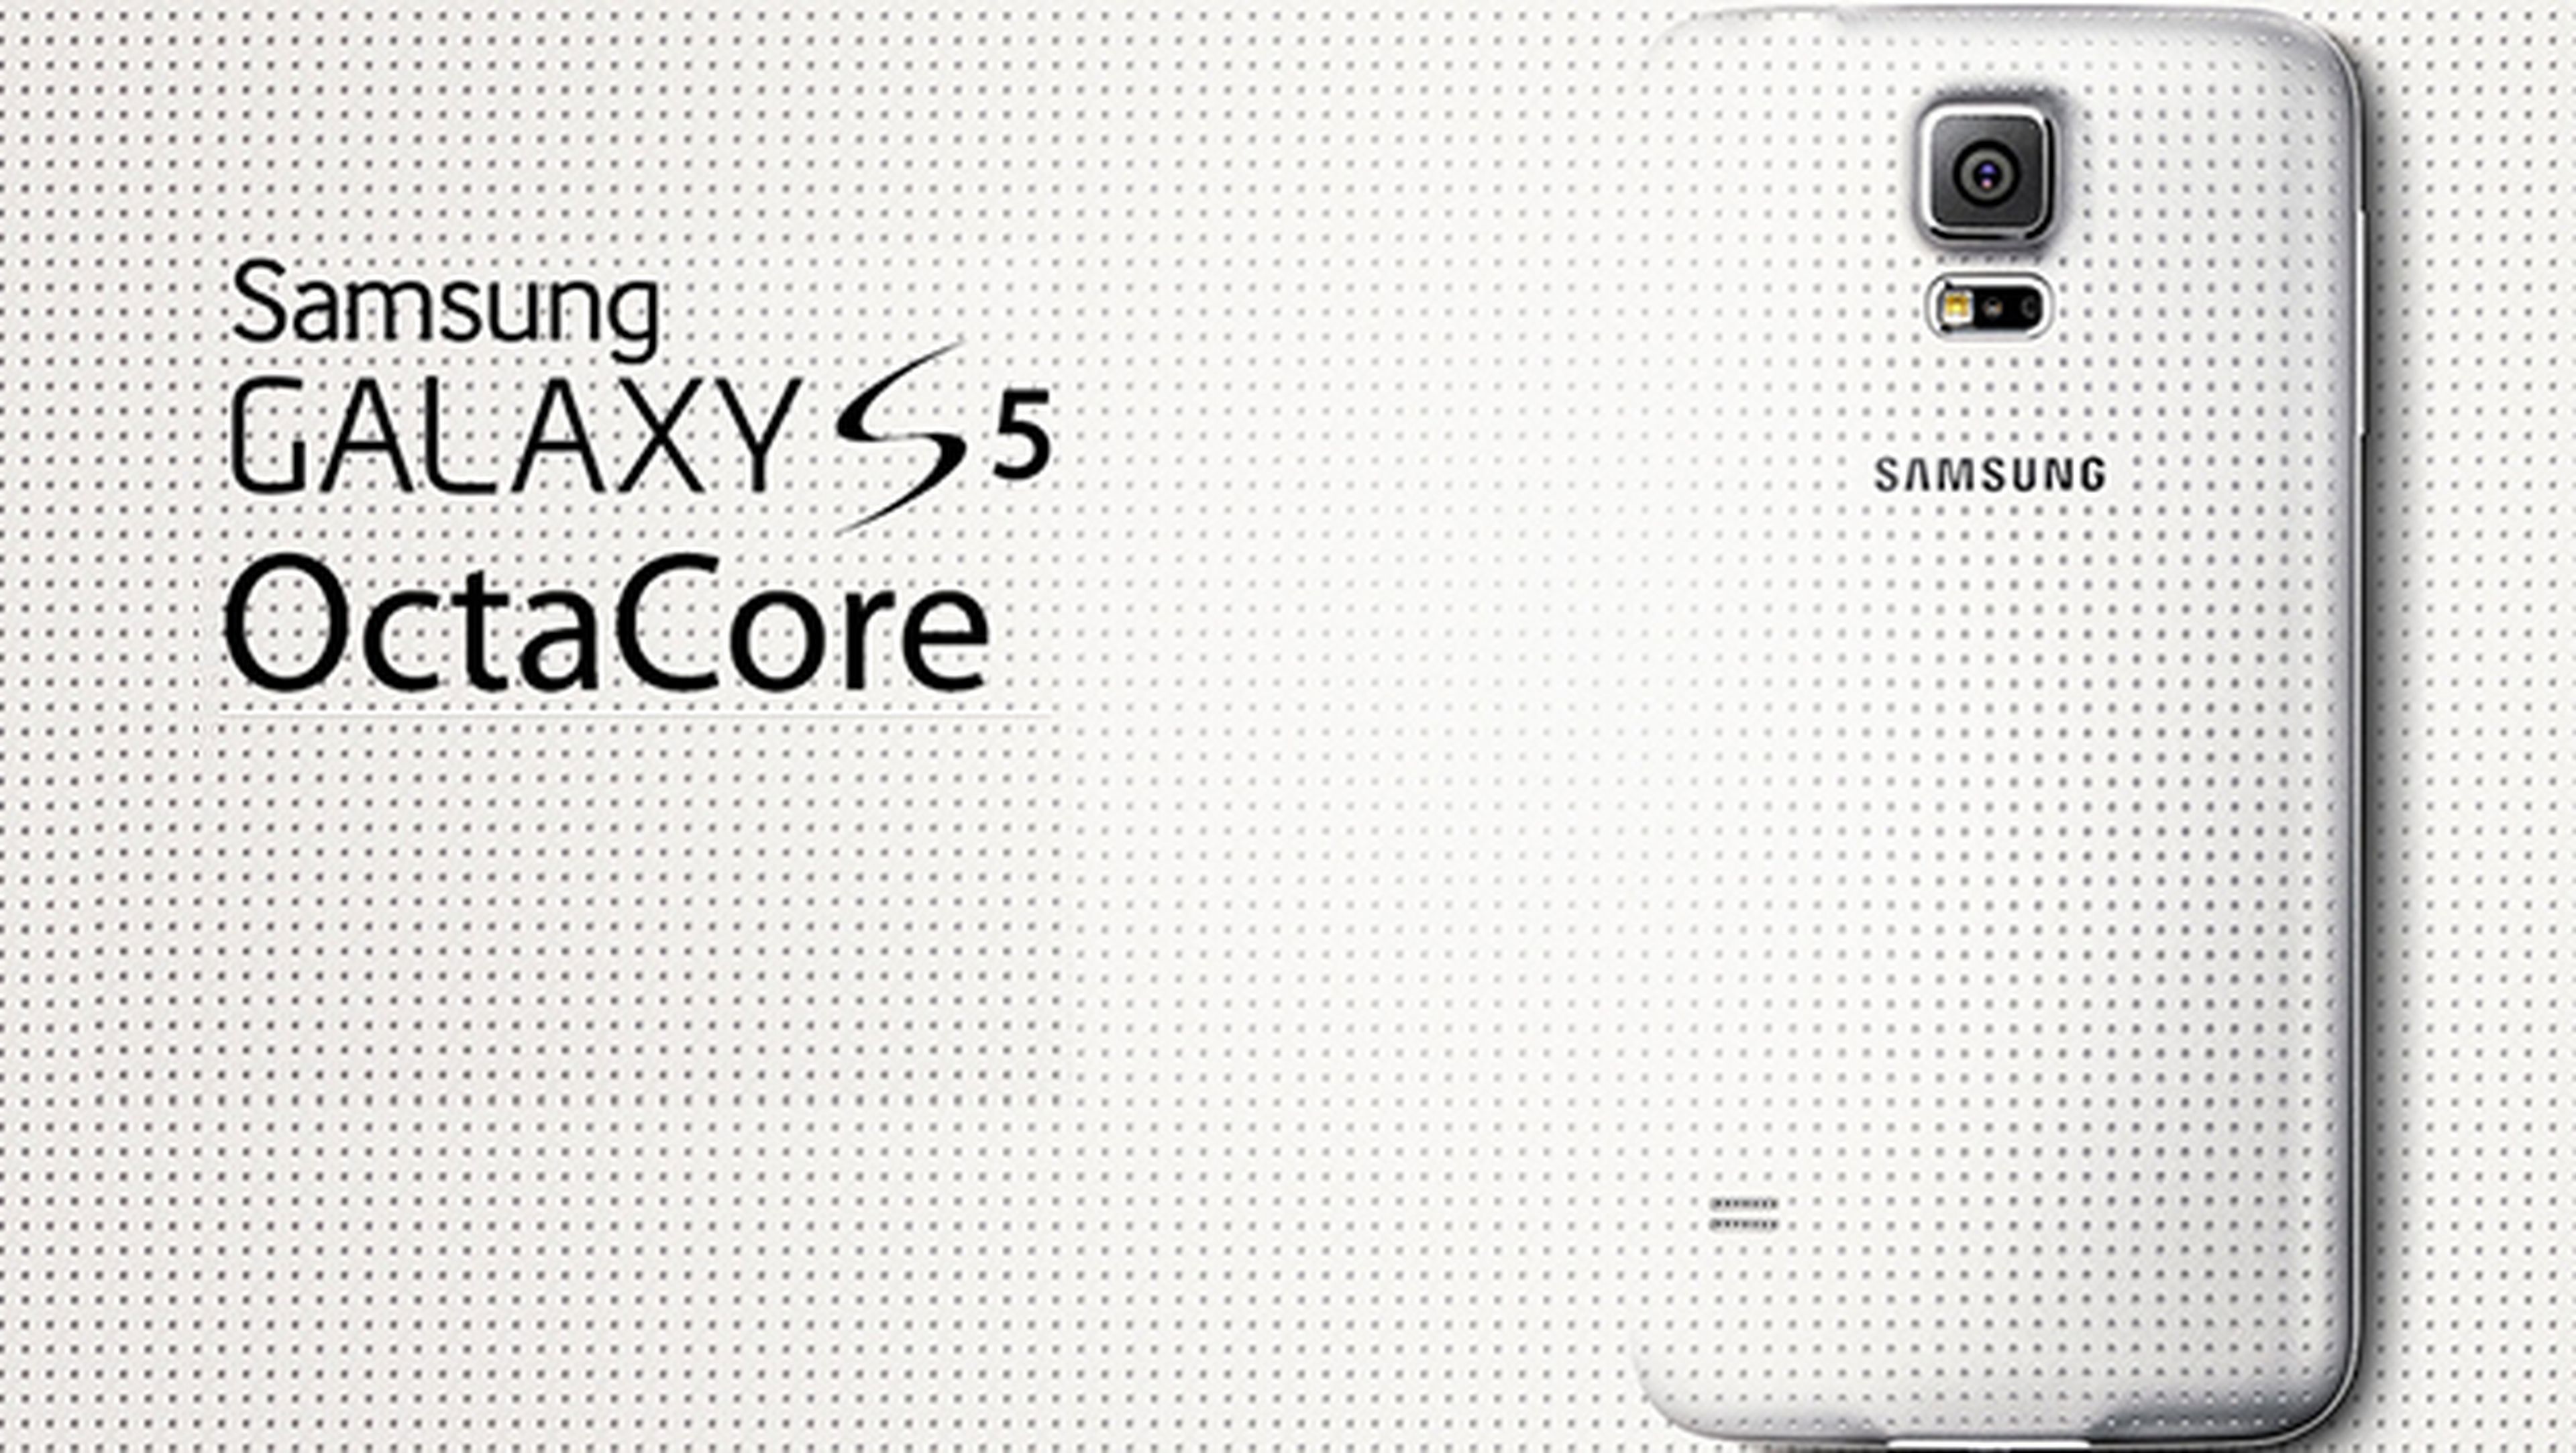 Samsung revela nueva versión del Galaxy S5 con CPU OctaCore